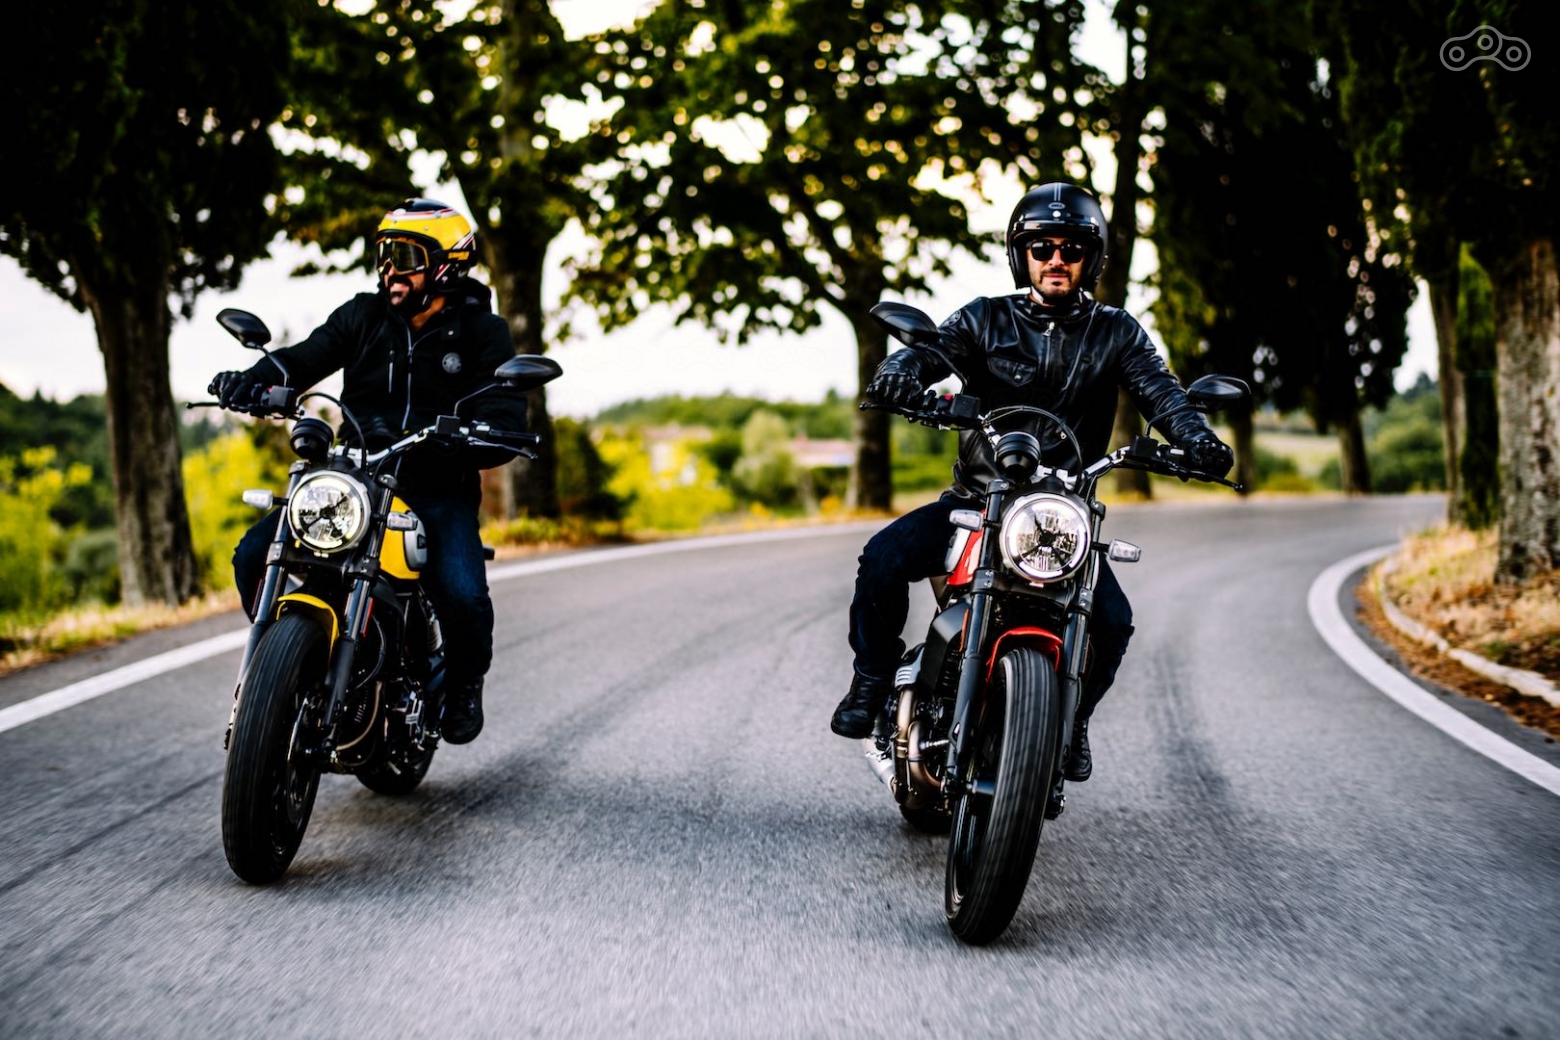 Новая светодиодная фара мотоцикла появилась благодаря оптике старых гоночных мотоциклов и автомобилей, на которых для защиты от осколков